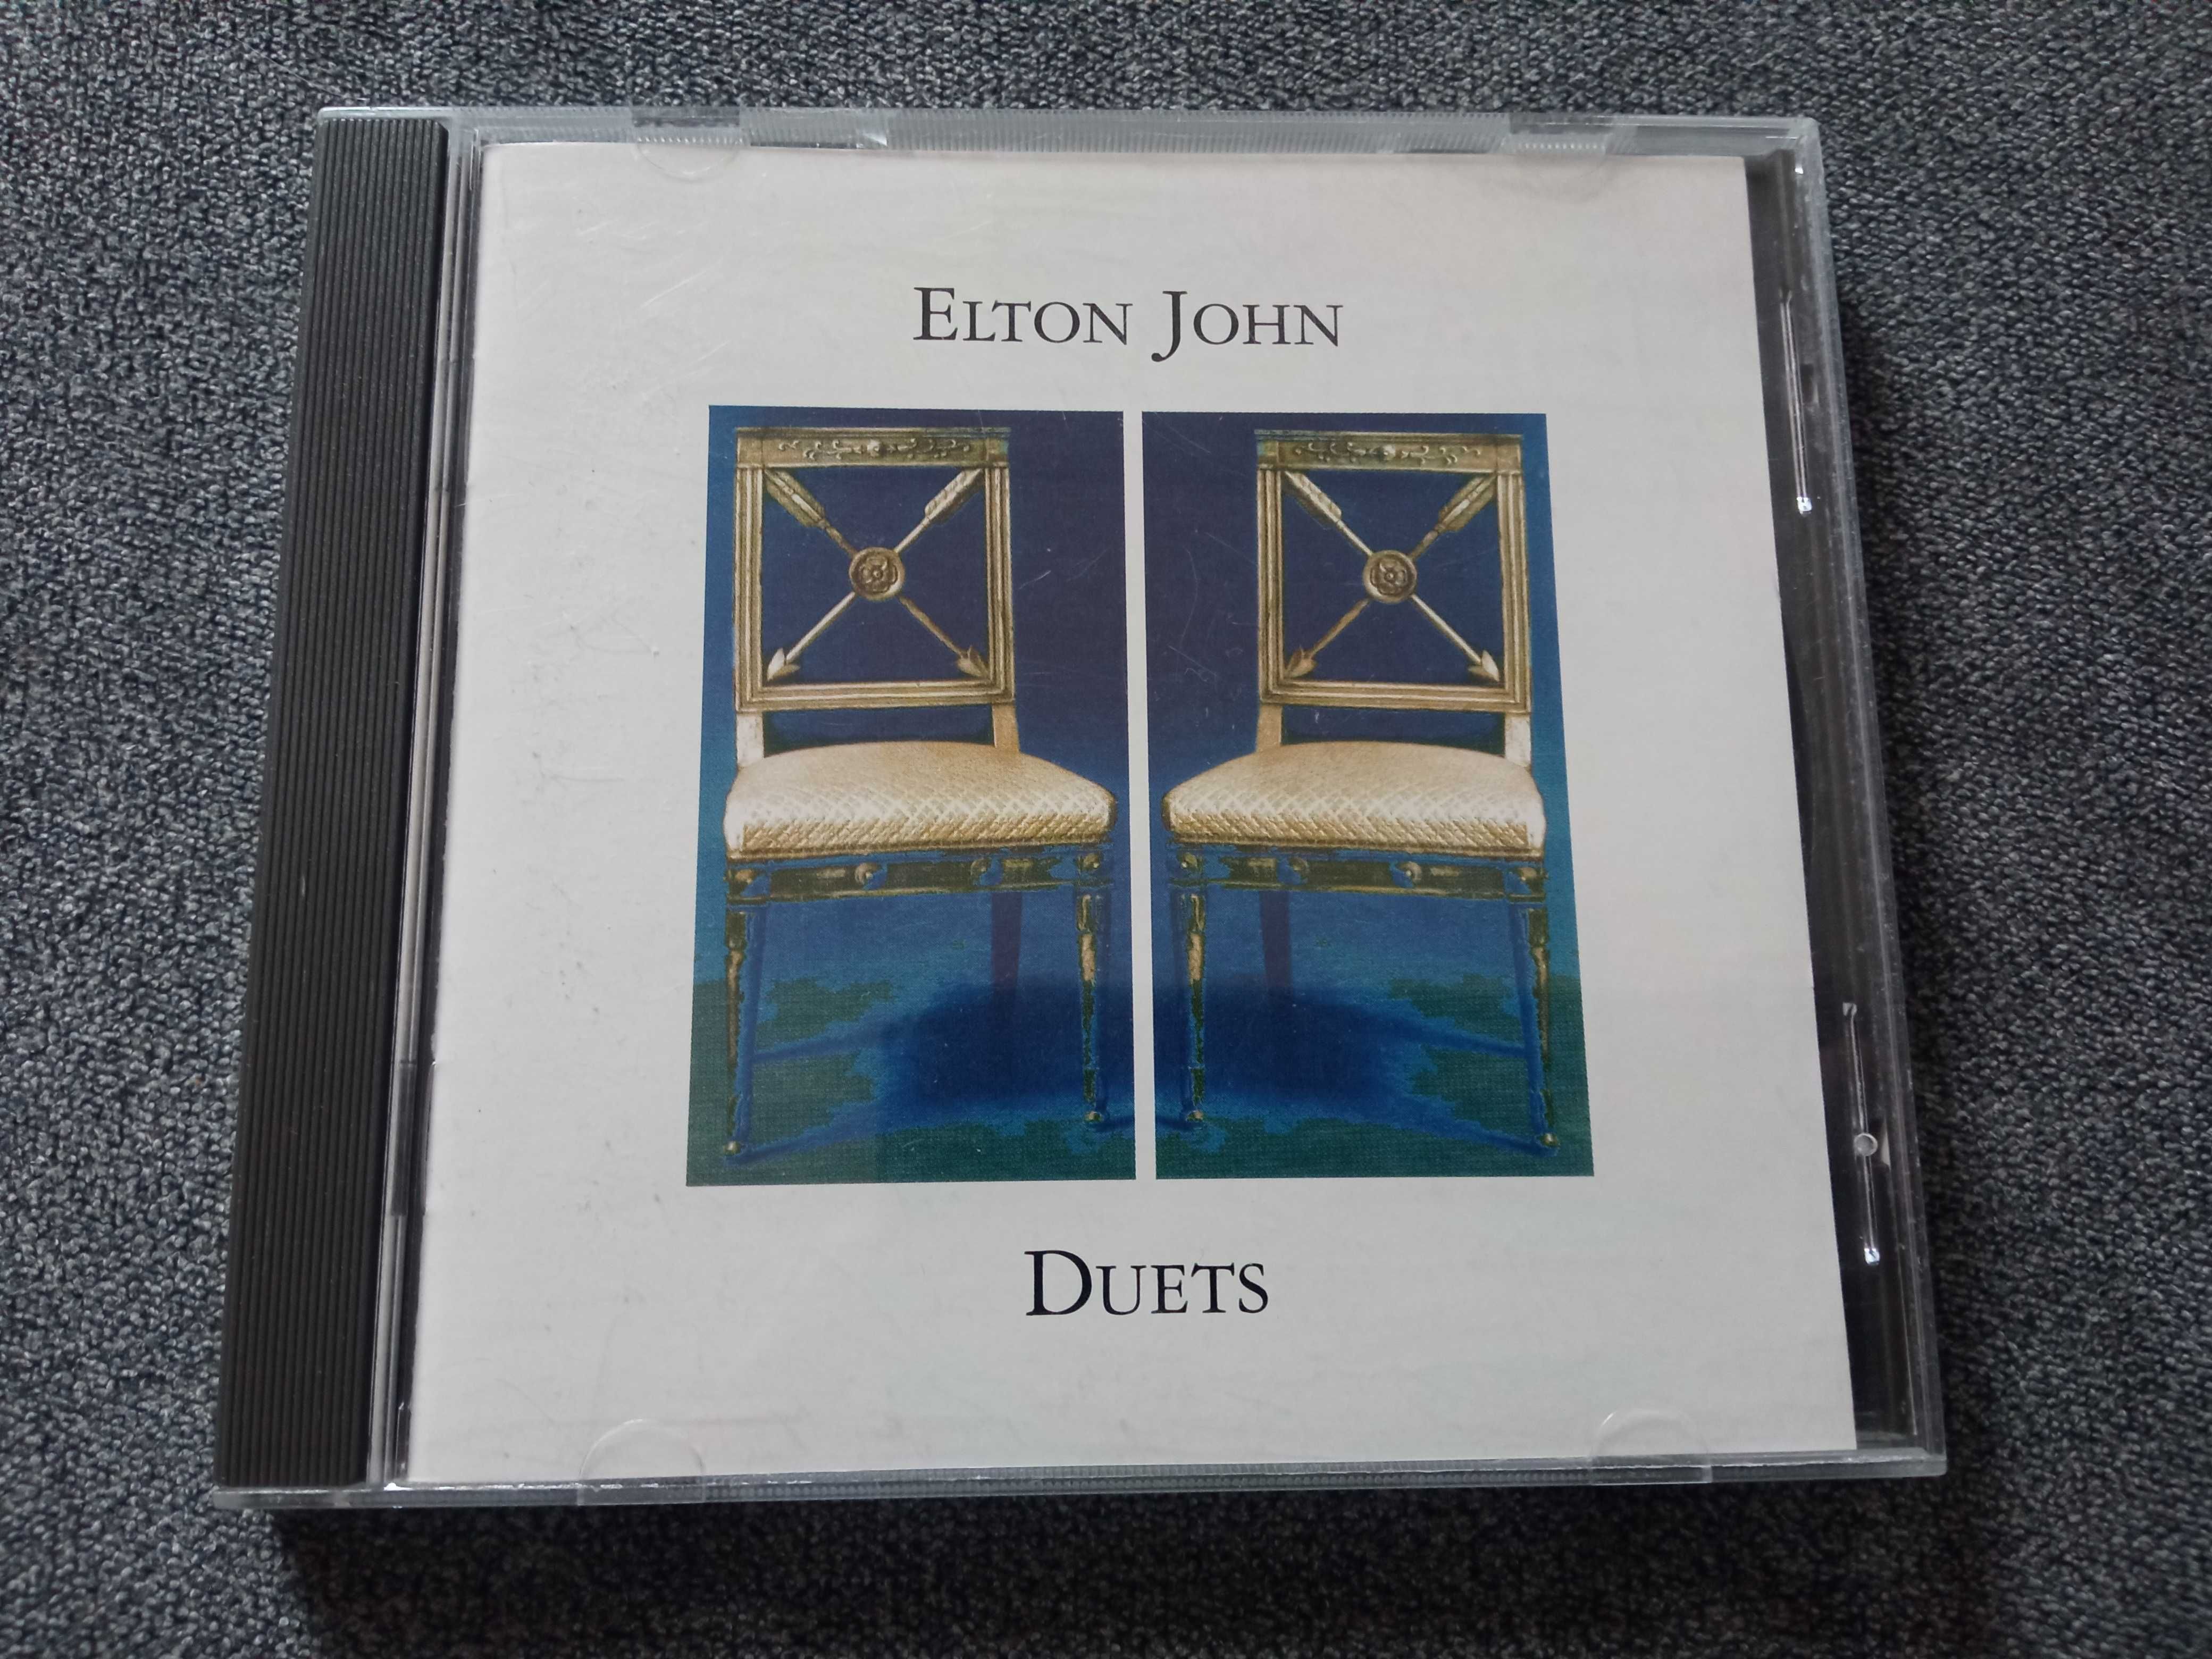 Elton John Duets CD wspaniali wykonawcy!